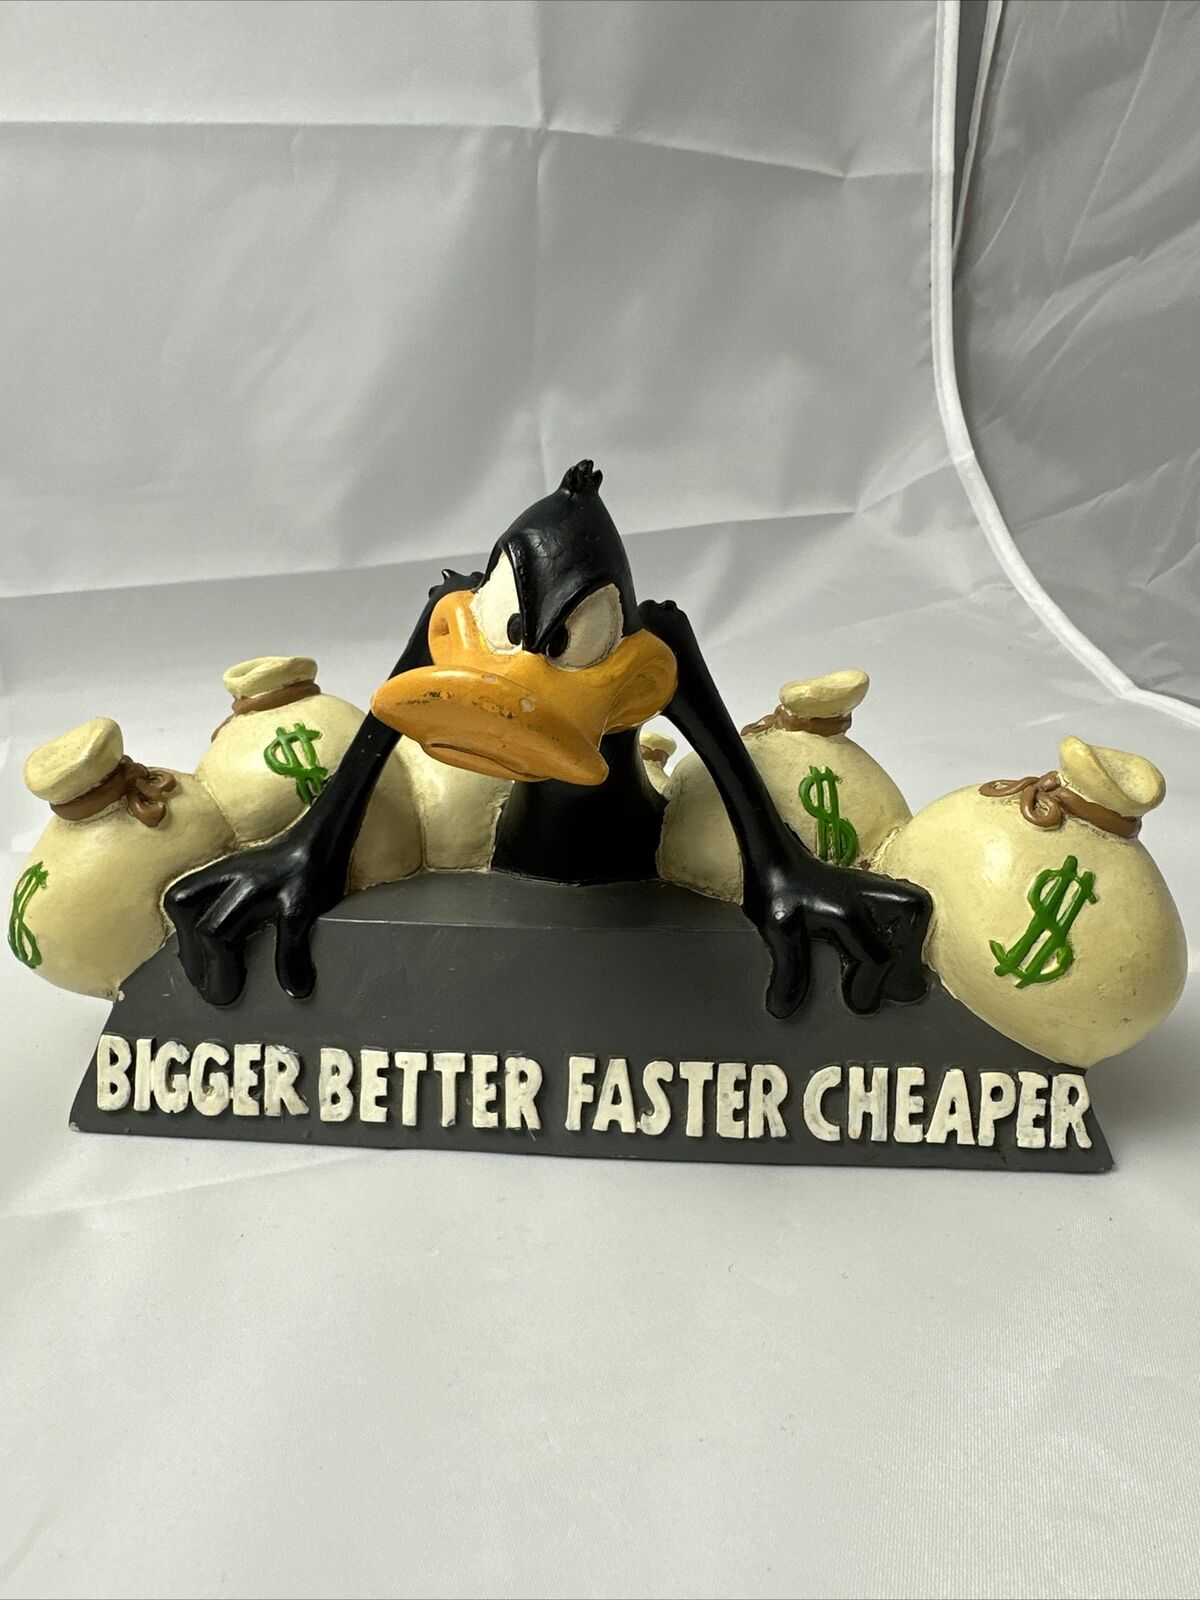 VTG 95 Warner Bros. Store Daffy Duck Bigger Better Faster Cheaper Money Figurine